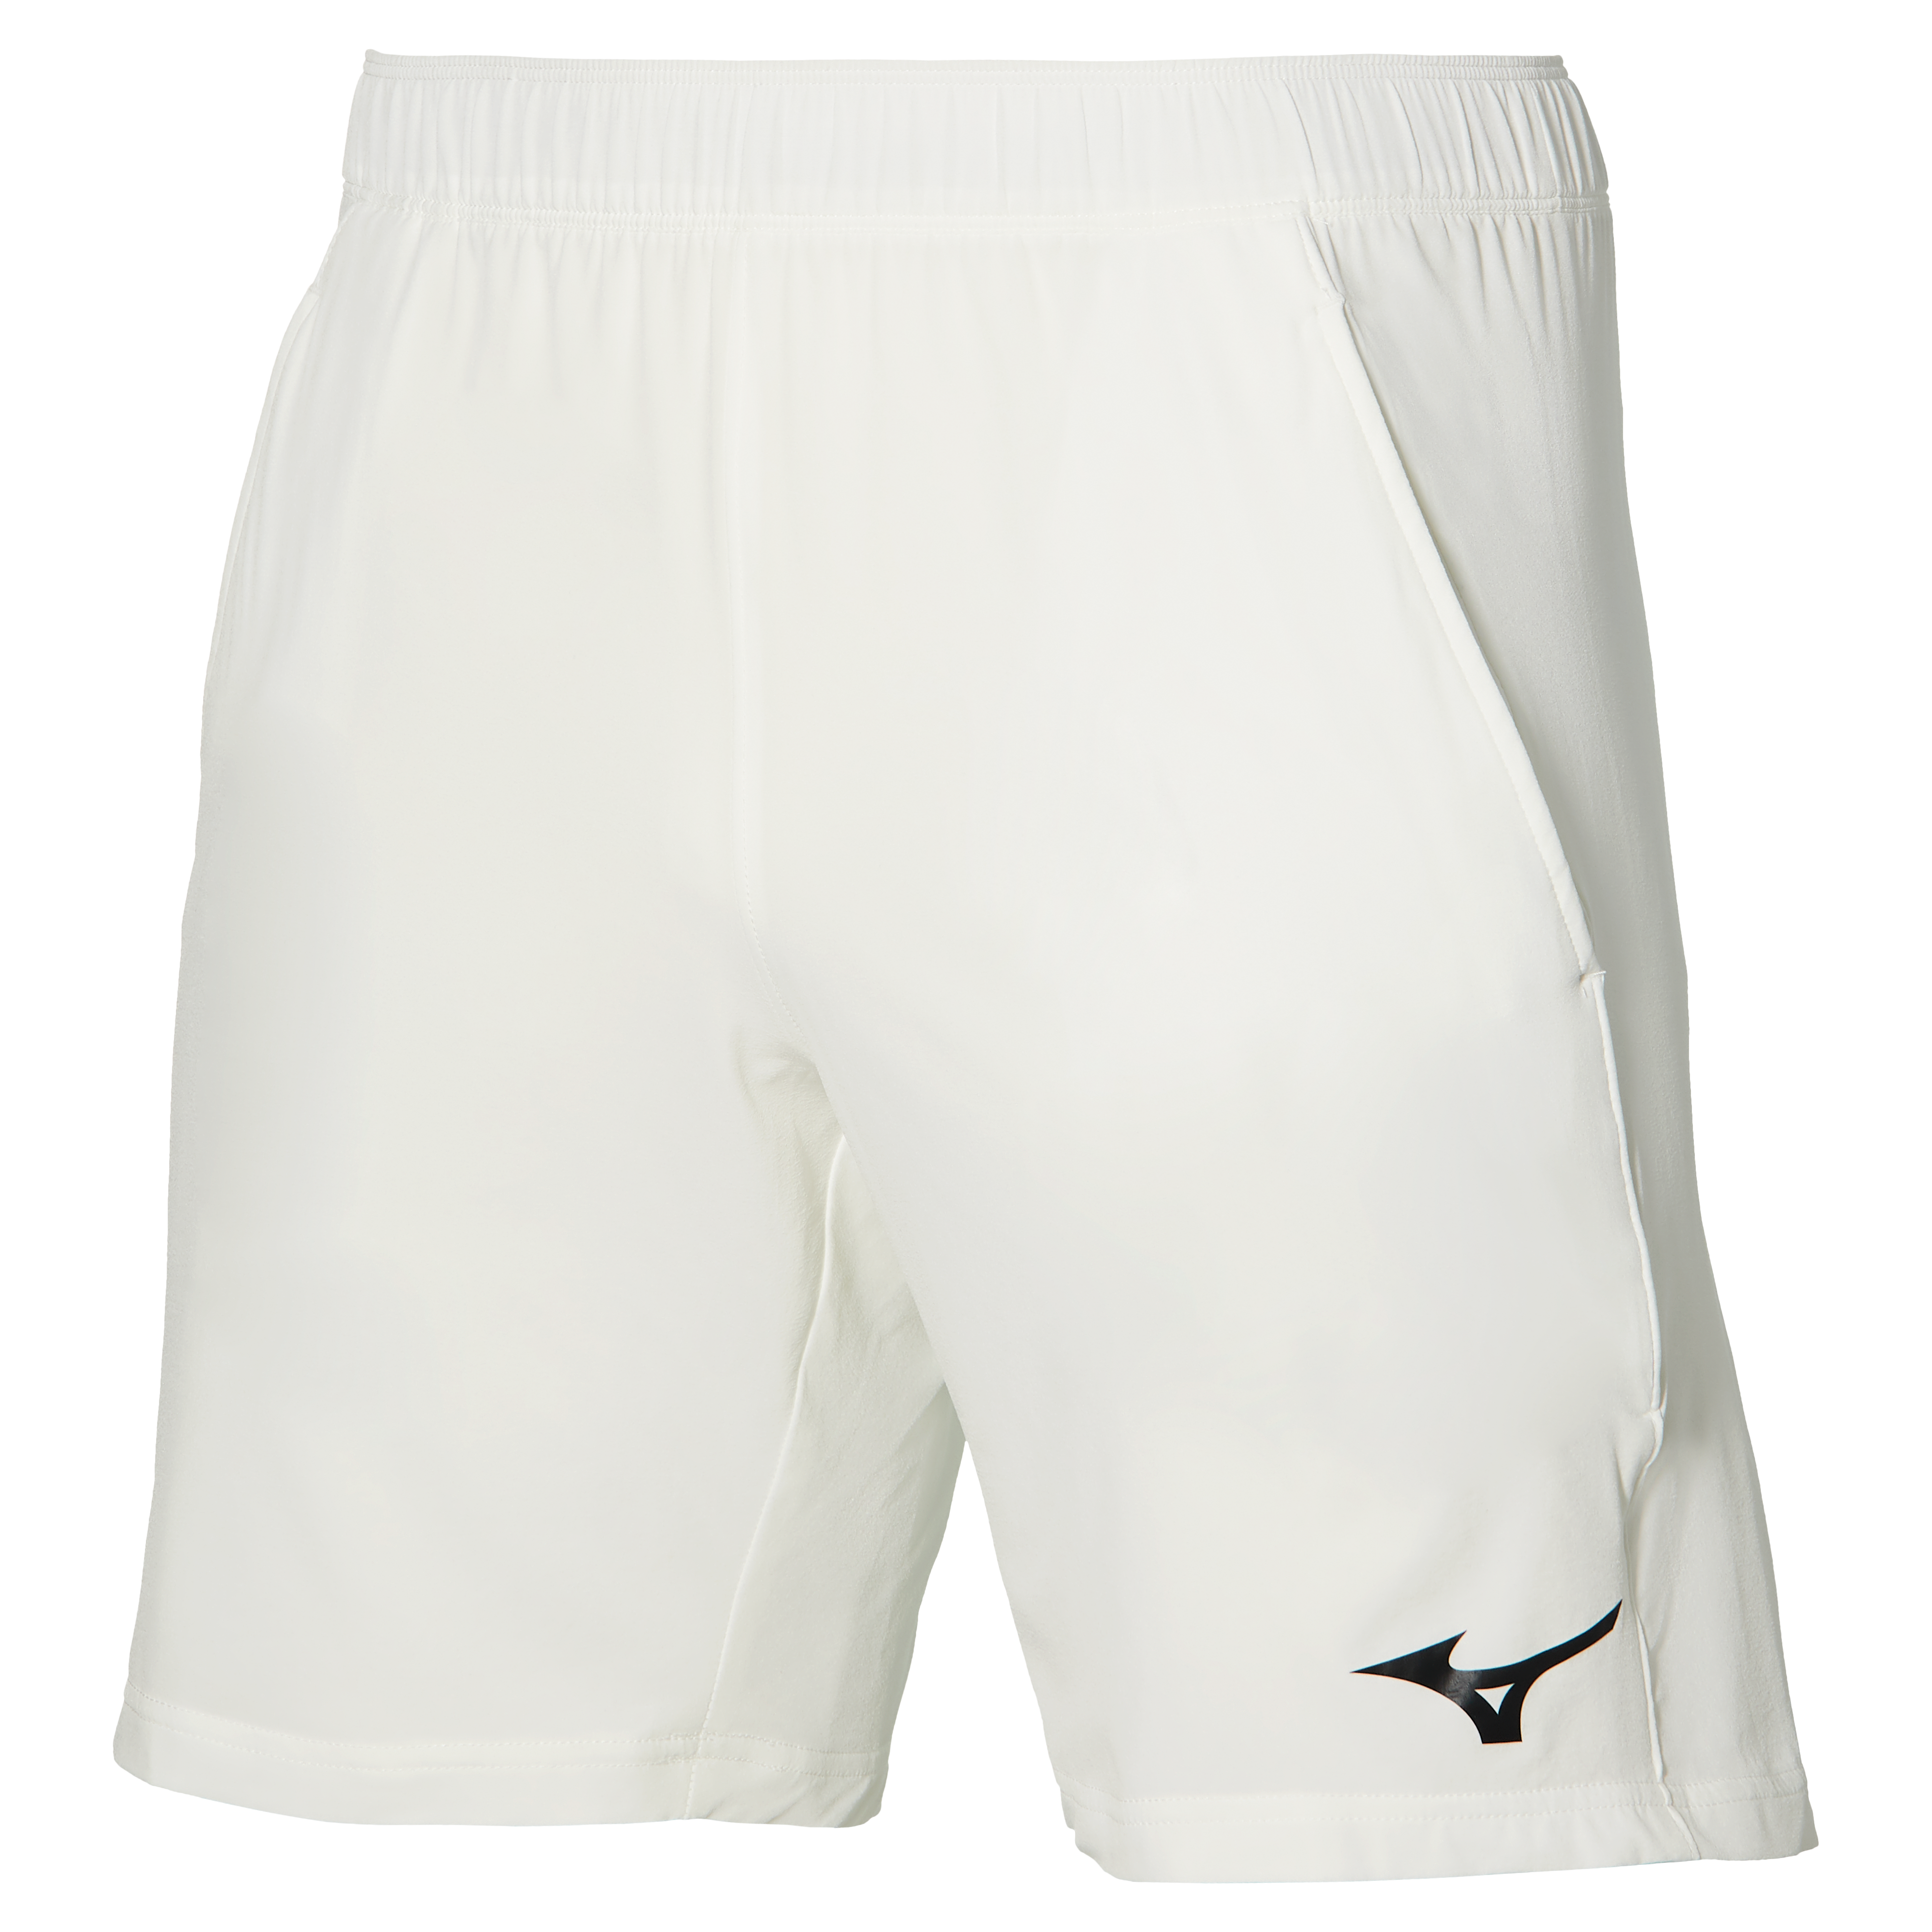 Mizuno 8" Flex Shorts (Mens, White)